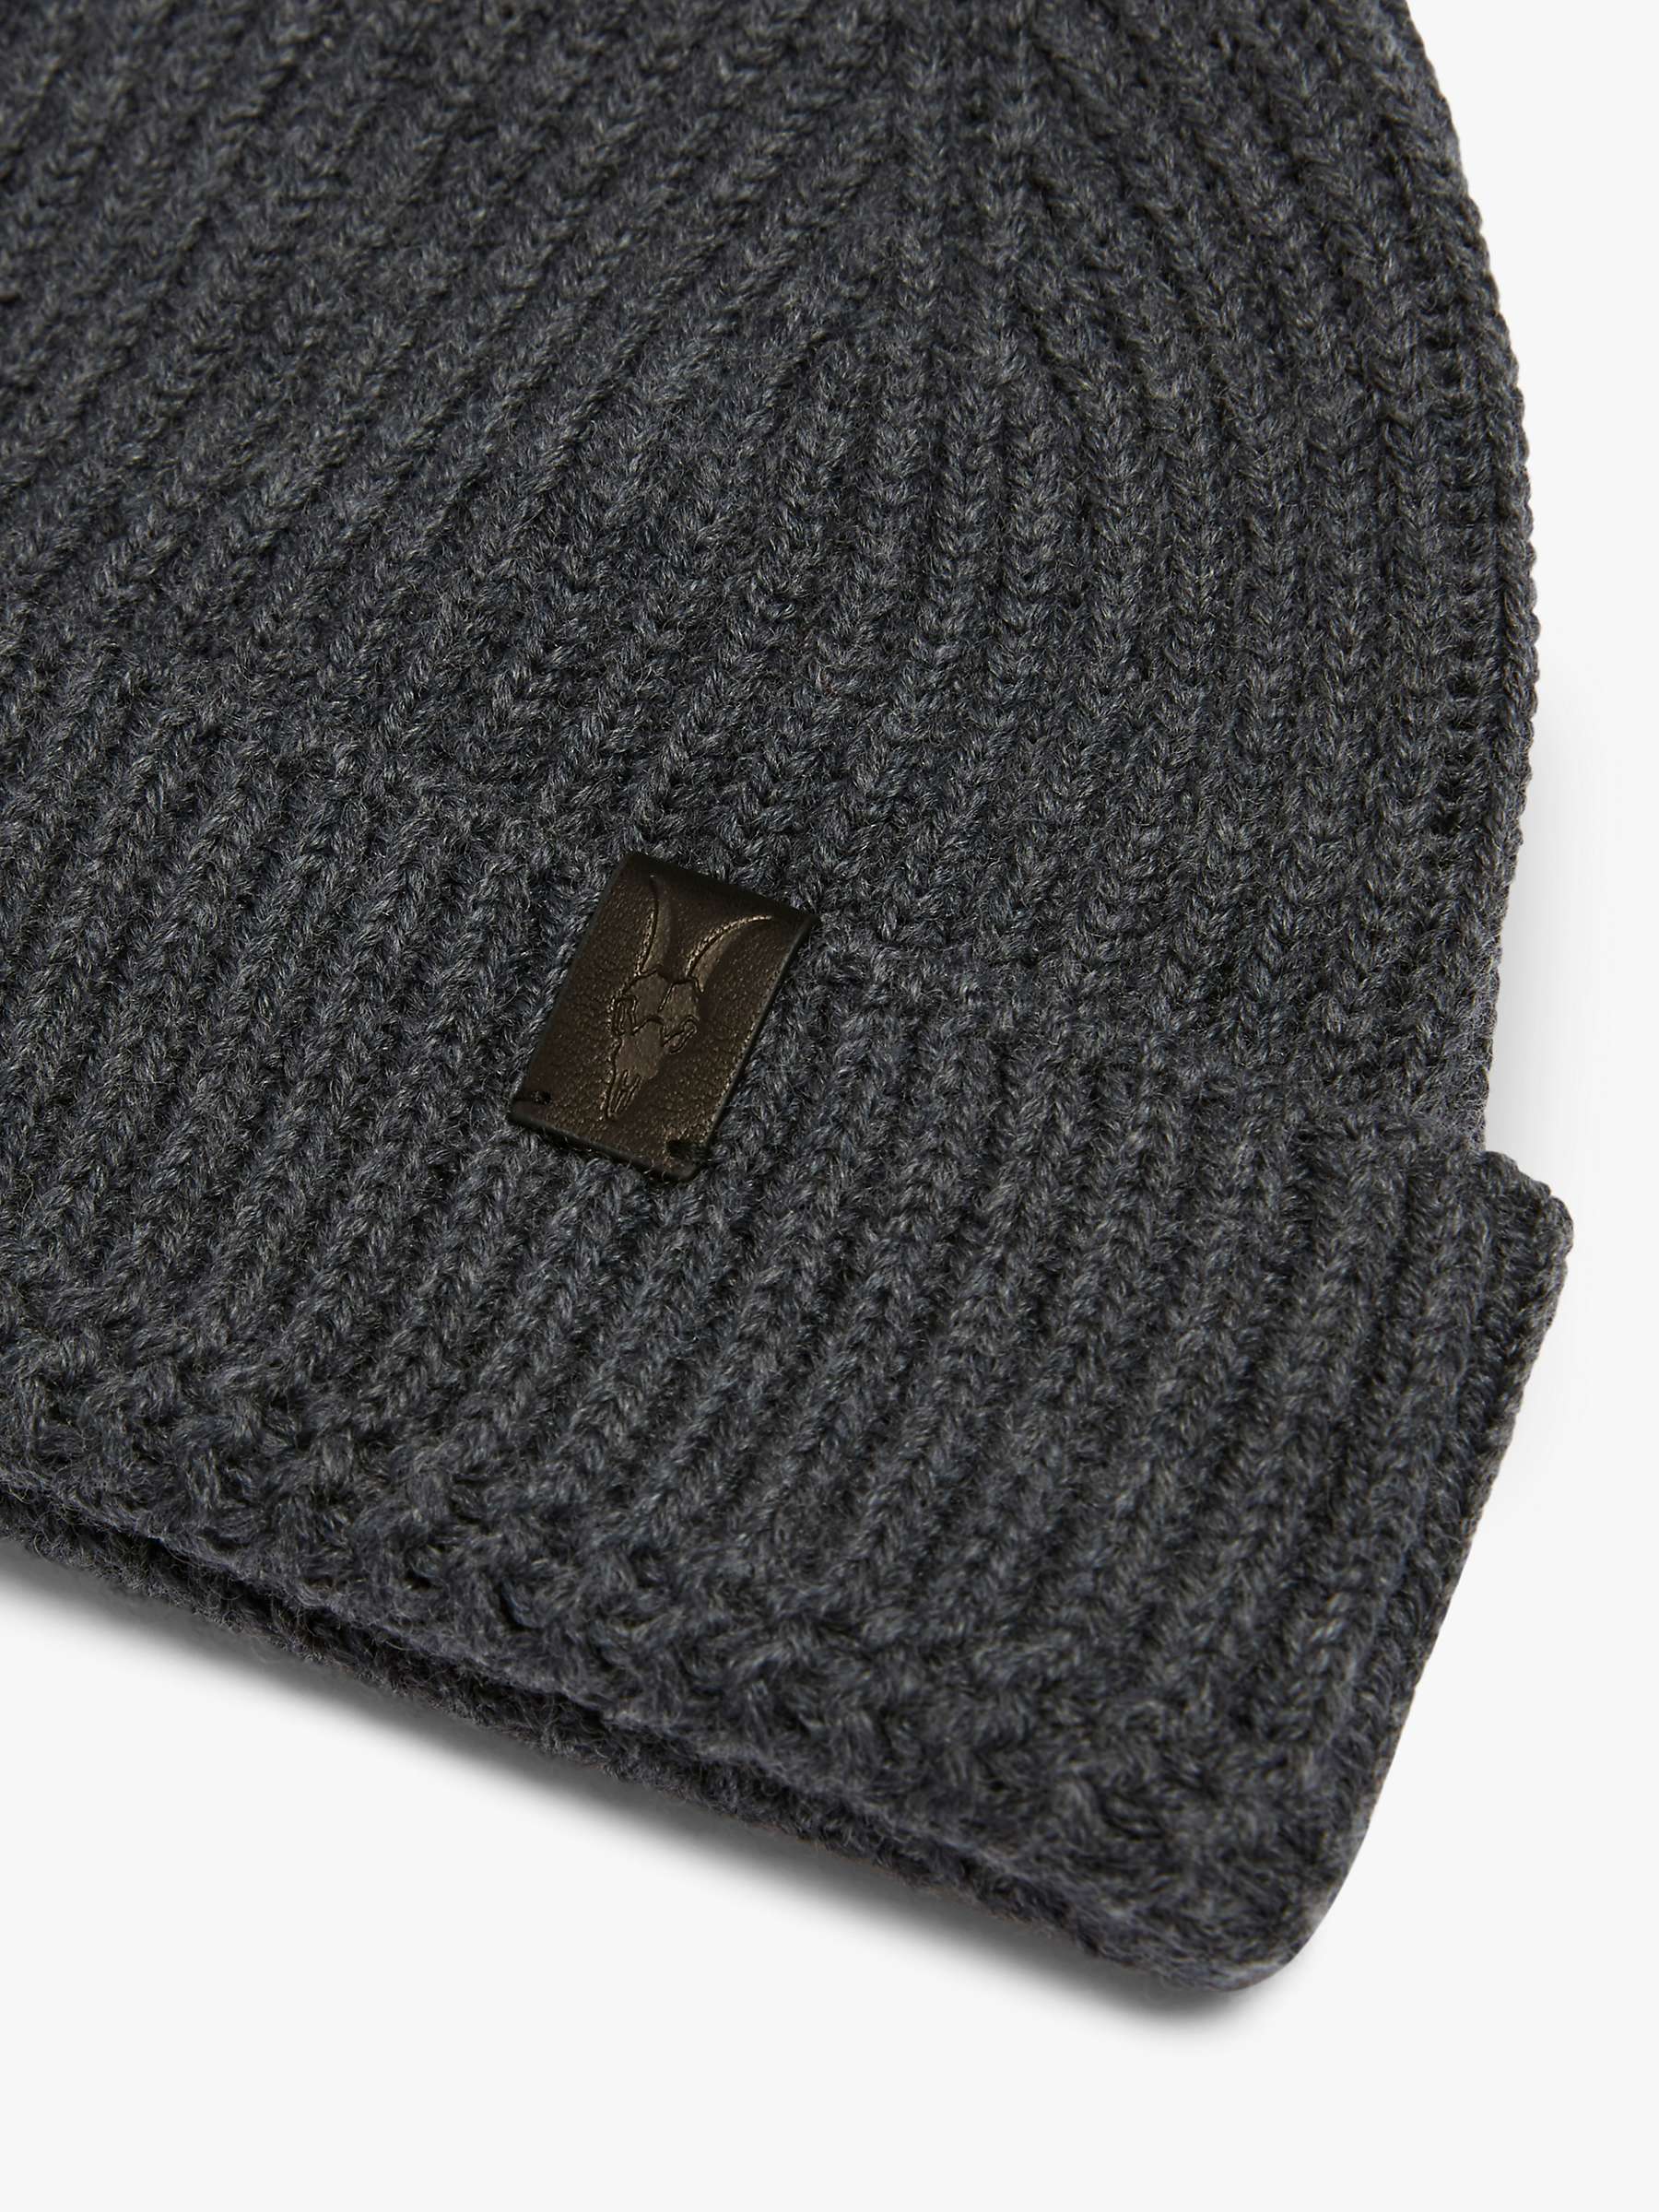 Buy AllSaints Merino Wool Beanie Hat Online at johnlewis.com